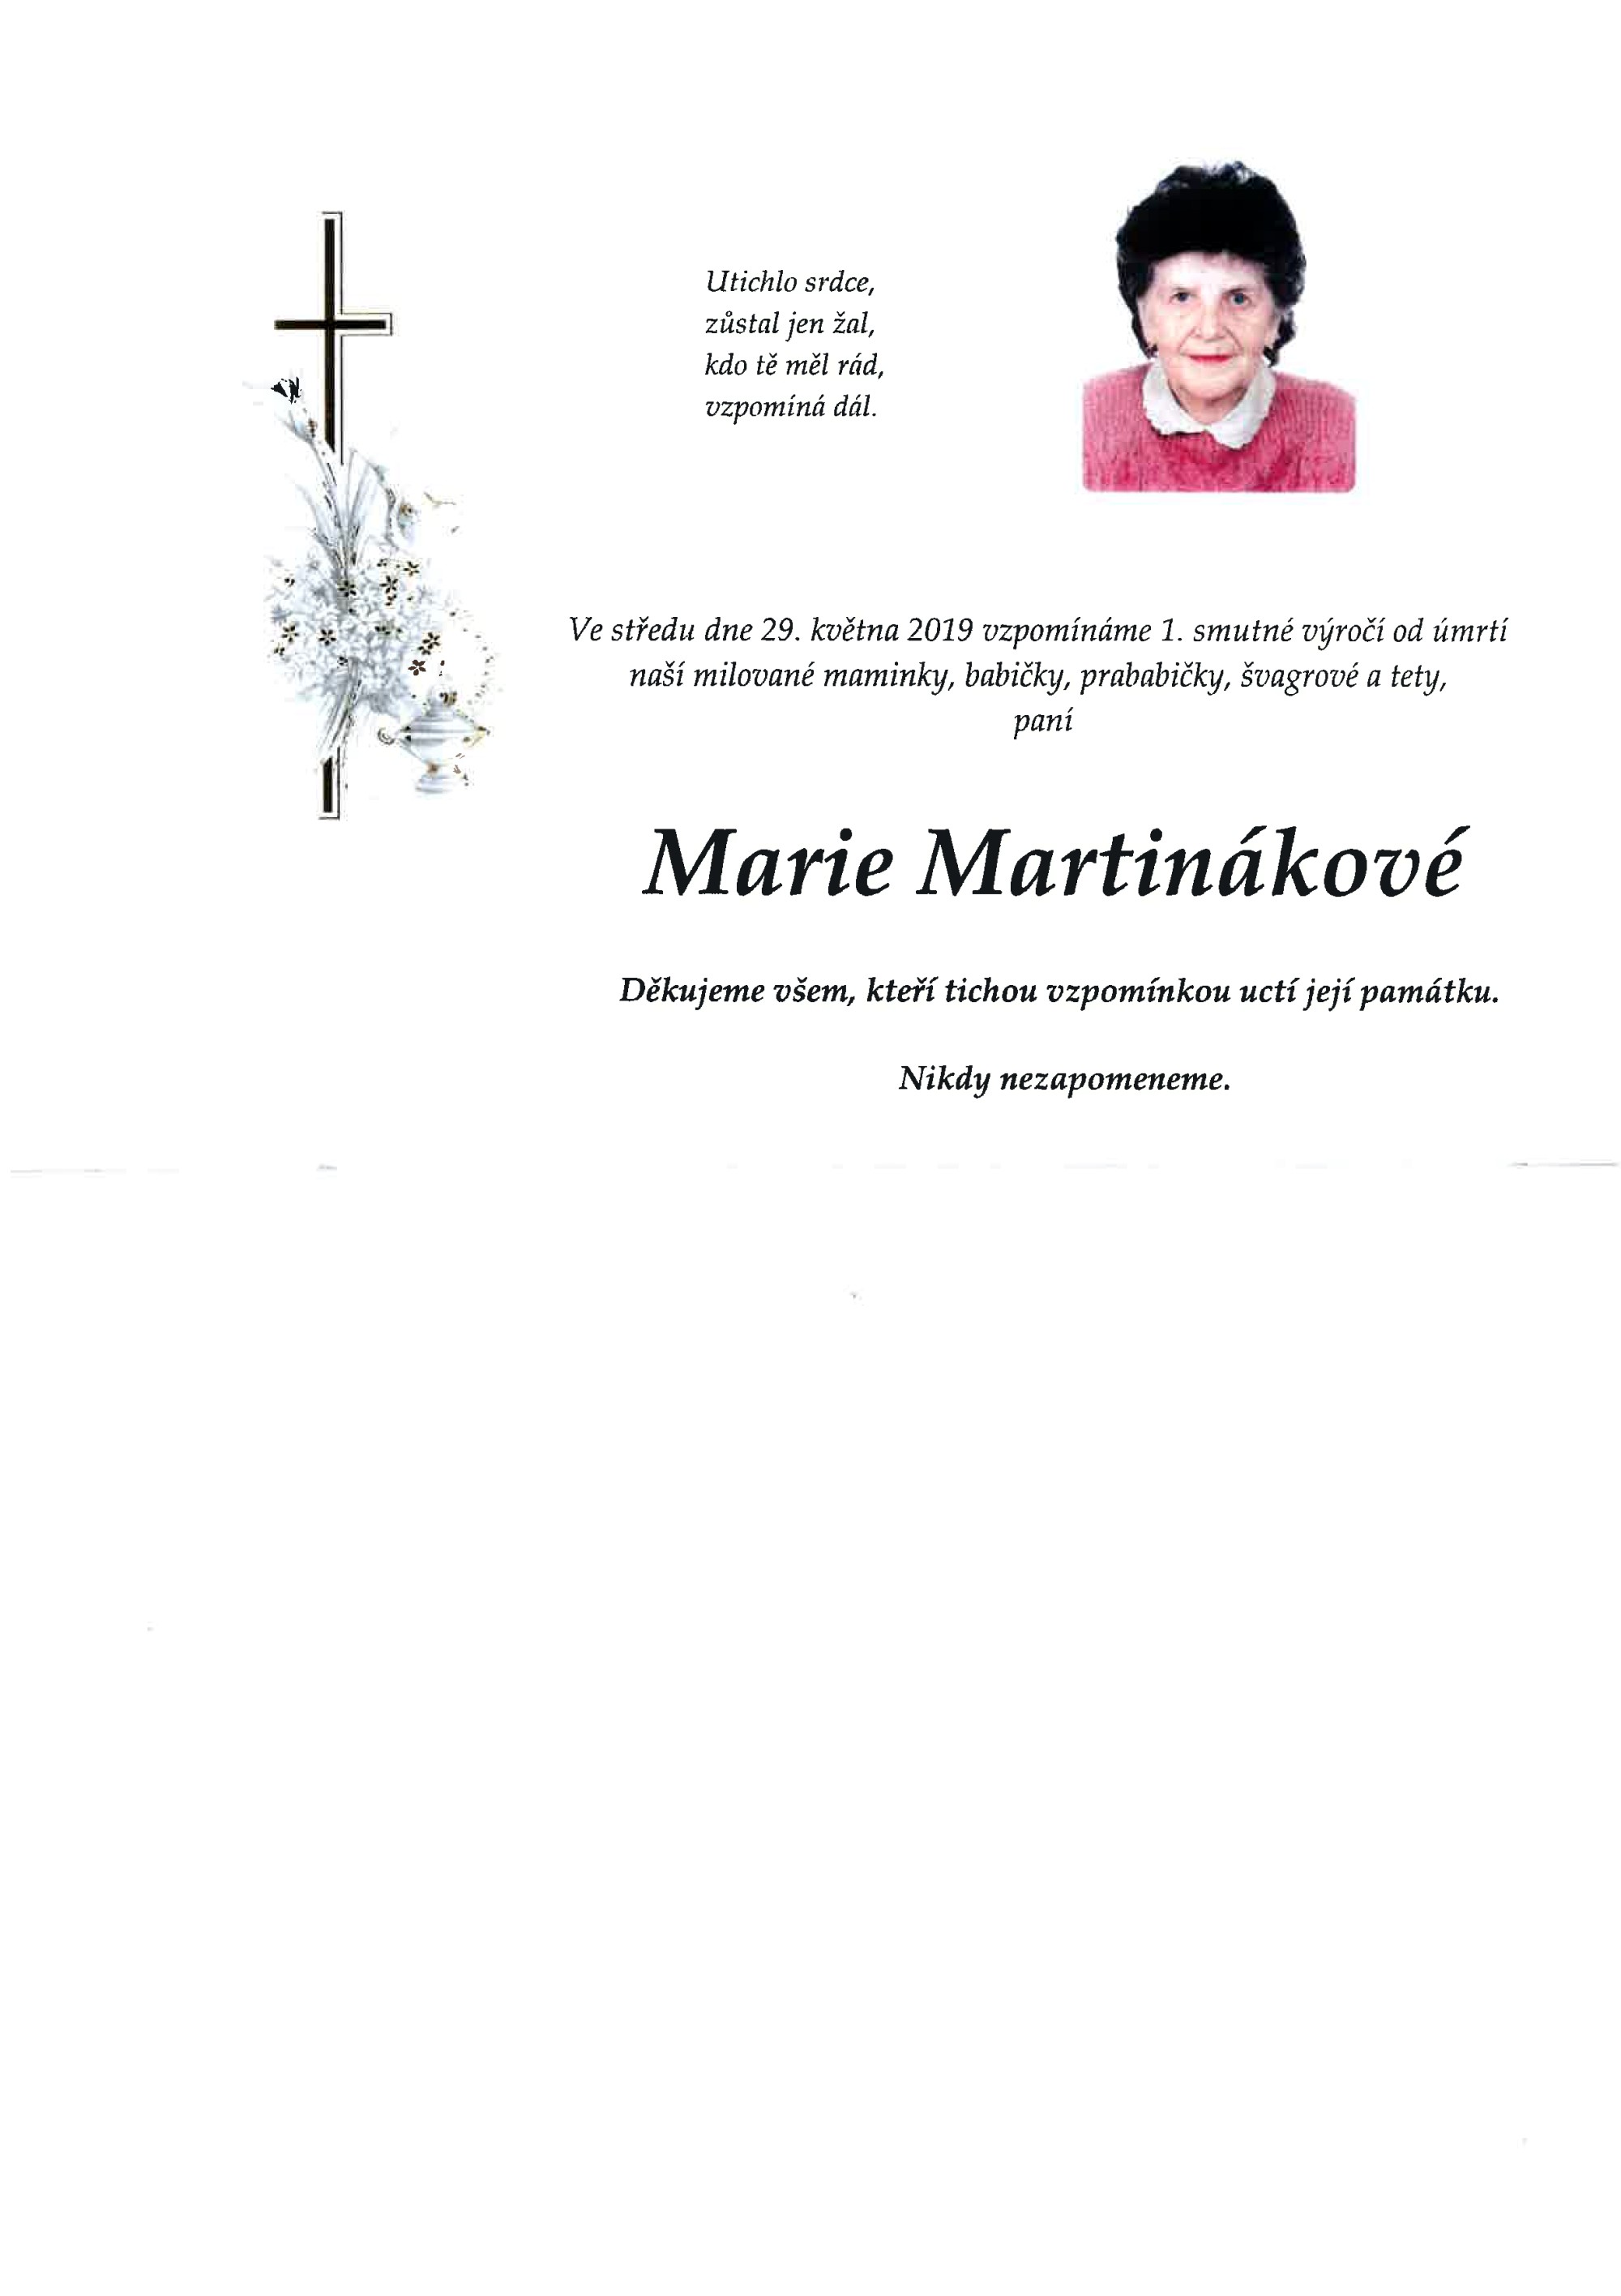 Marie Martináková